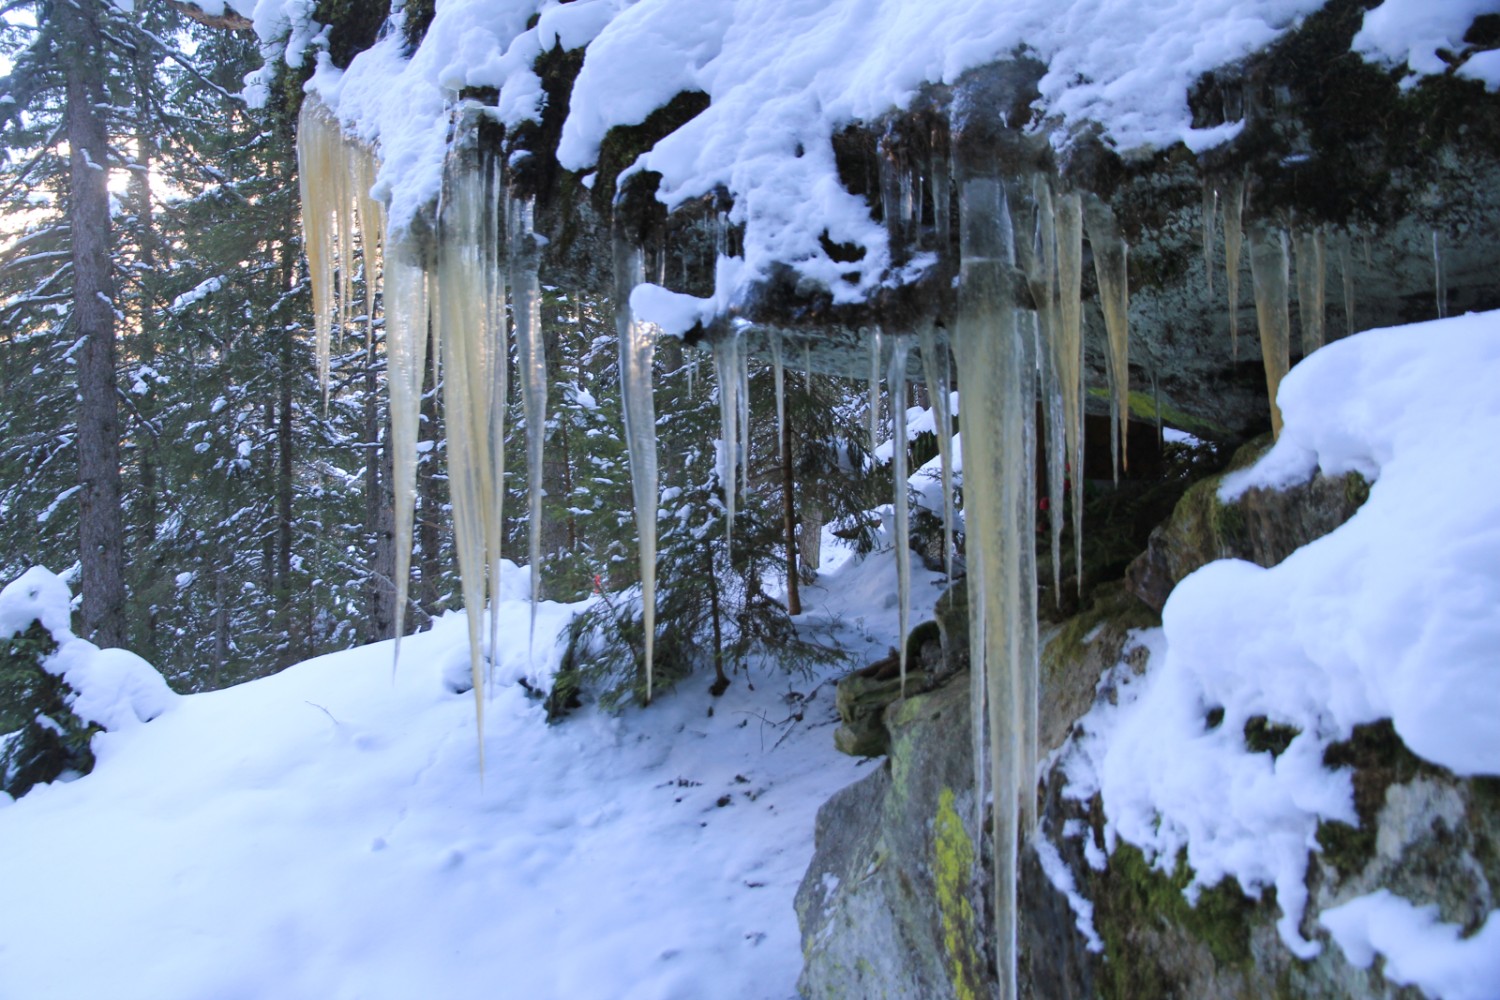 Des stalactites de glace évoquent la mâchoire d’une baleine. Photo: Elsbeth Flüeler